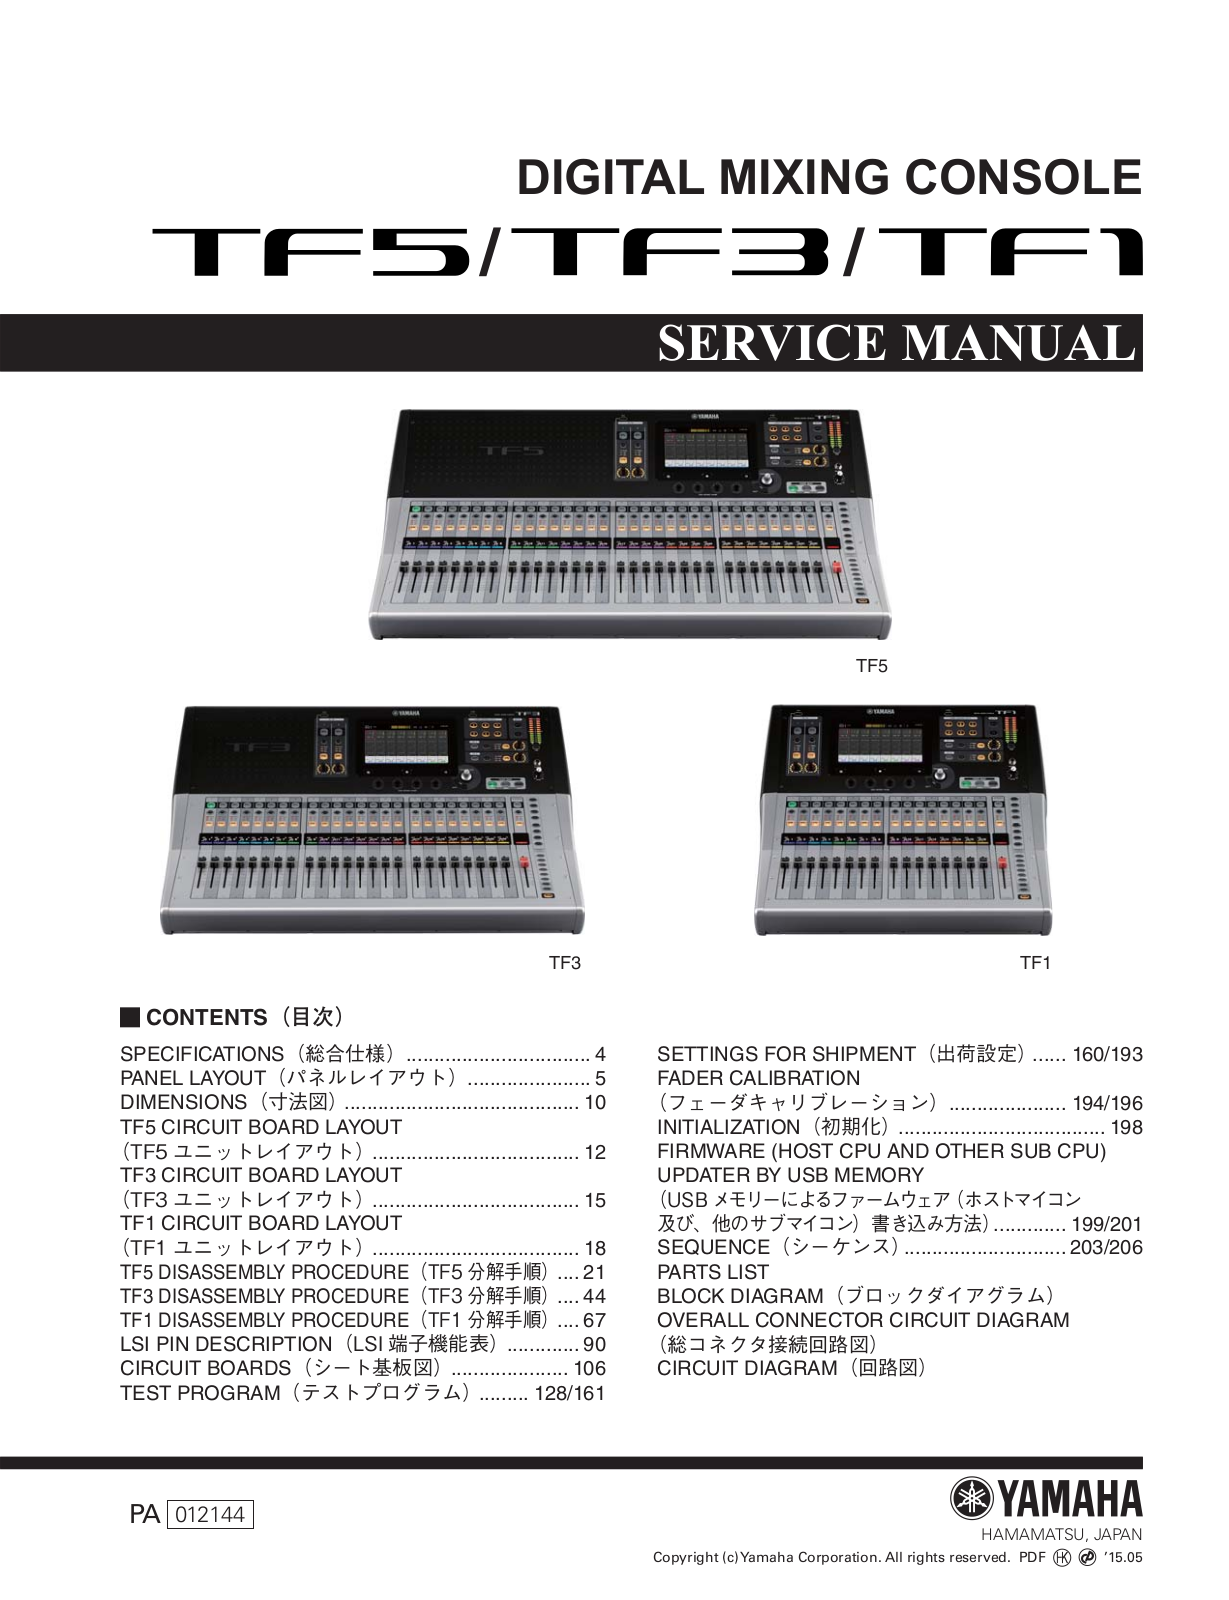 Yamaha TF5, TF1, TF3 Service Manual